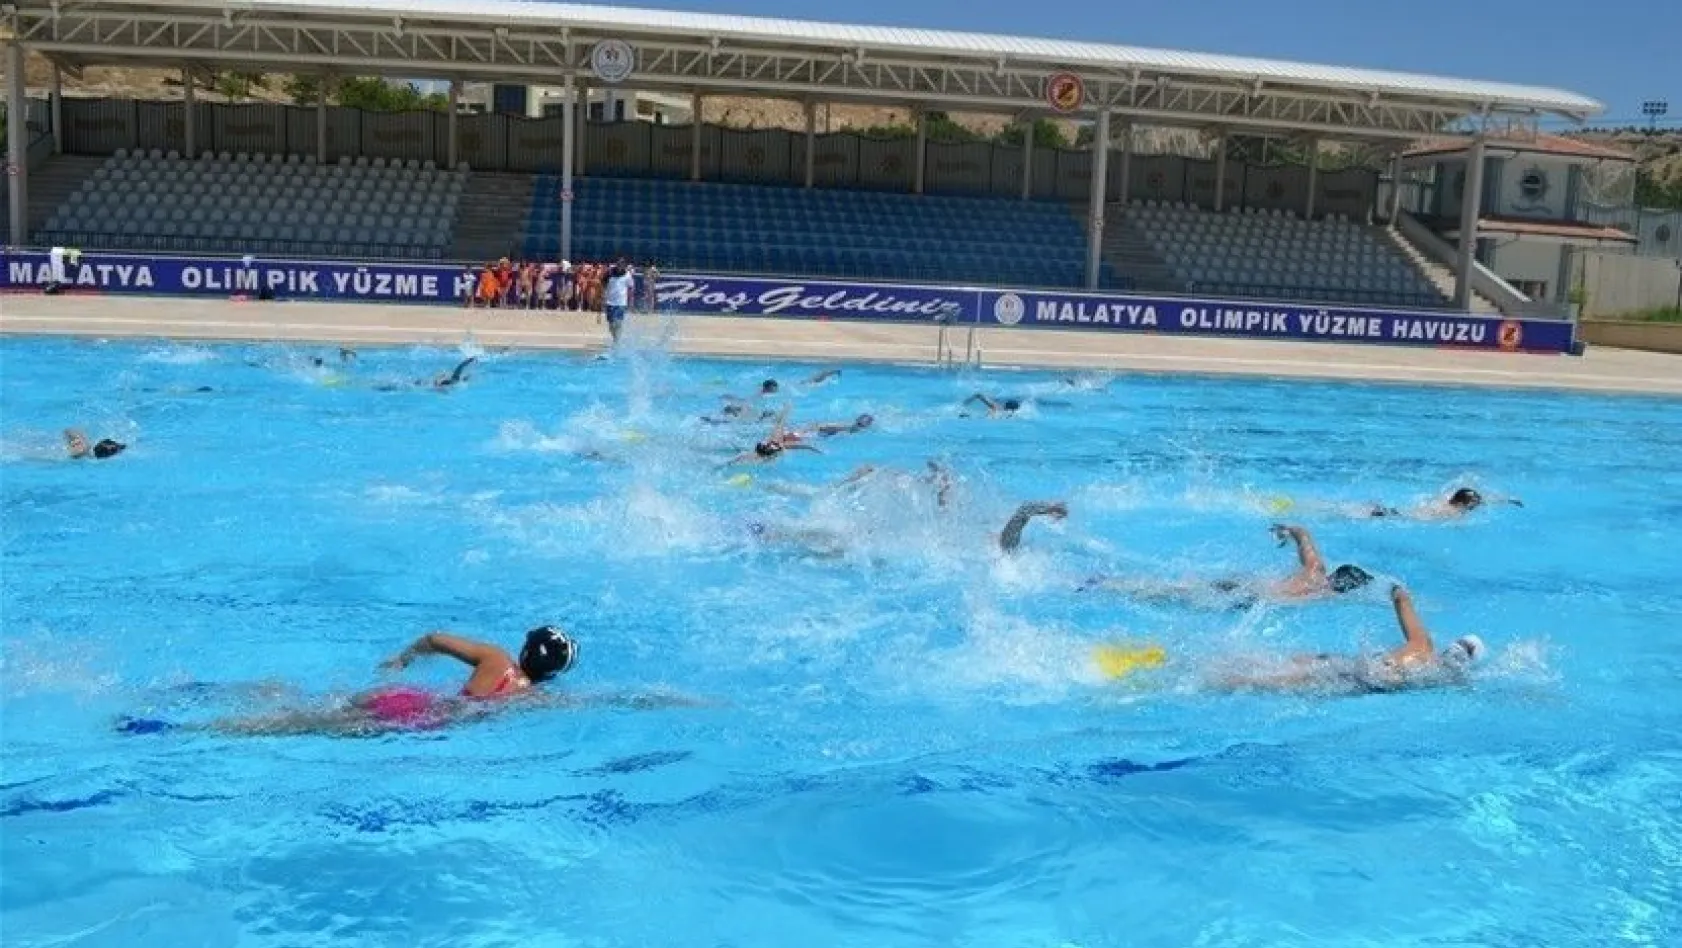 Olimpik havuz sezonu açıyor
